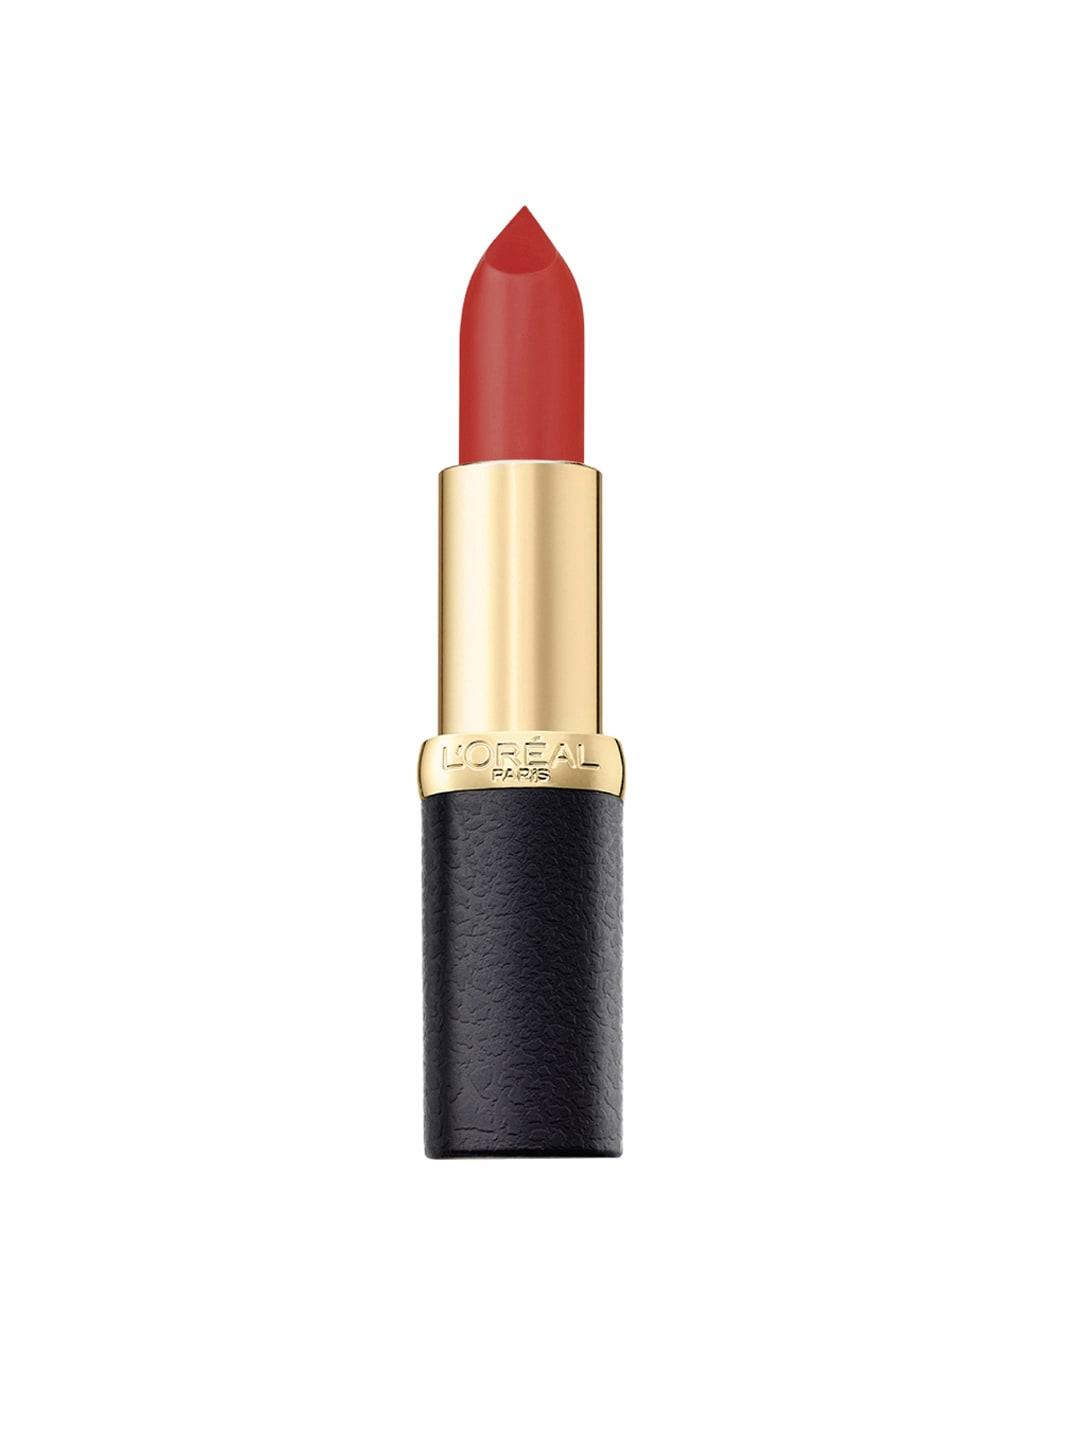 LOreal Paris Color Riche Moist Matte Lipstick - Betty Rouge 246